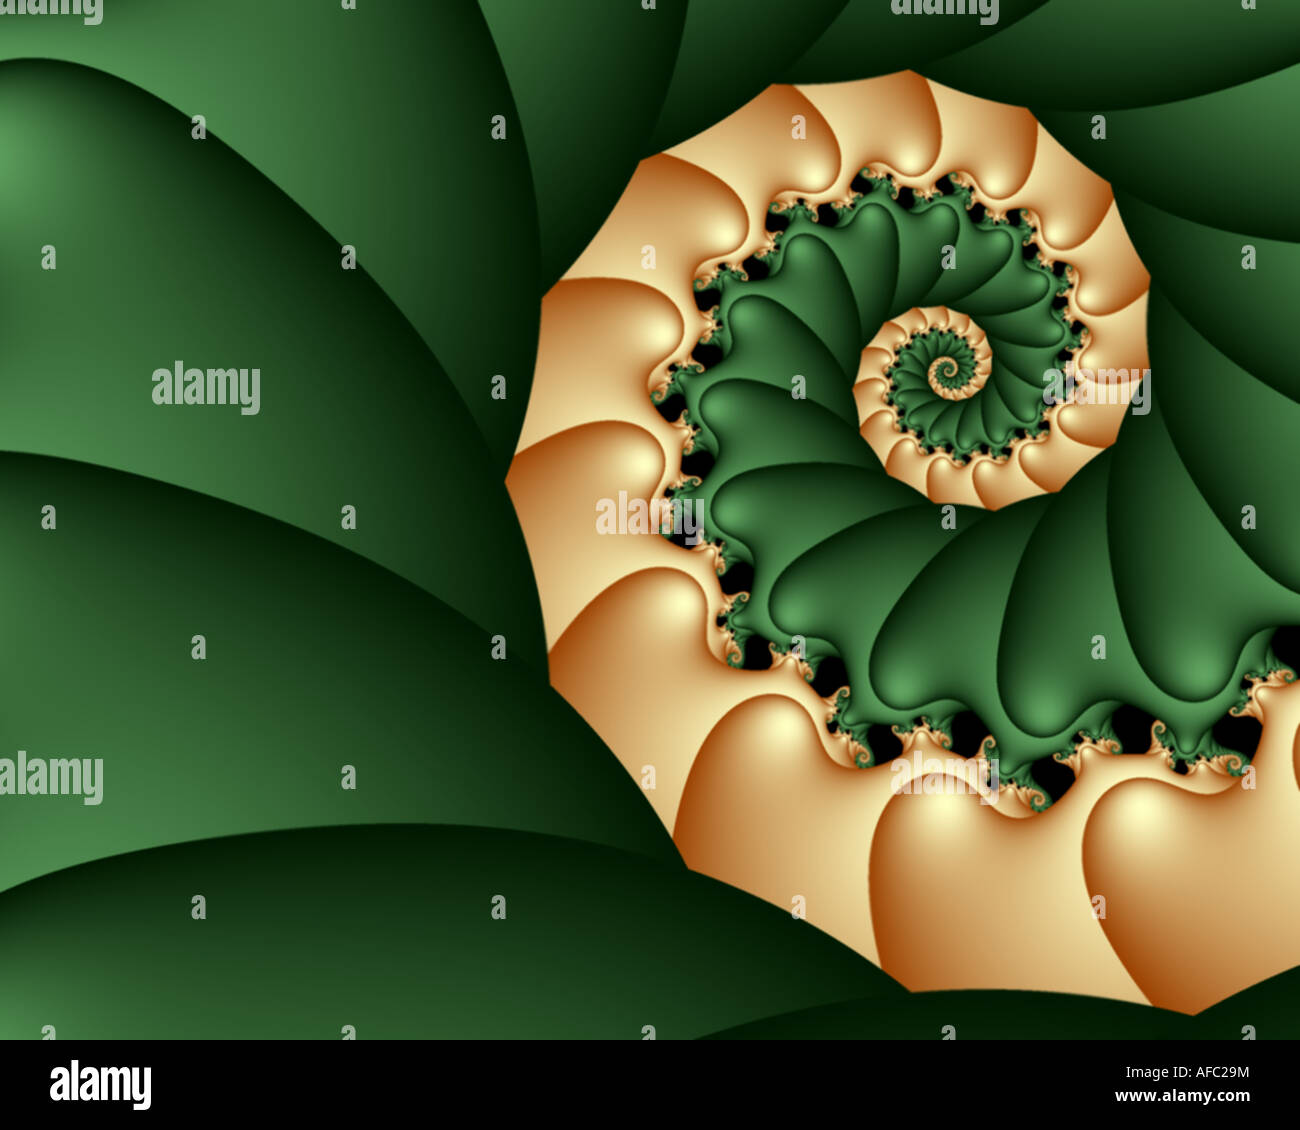 Résumé de l'image fractale qui ressemble à une spirale de forme coeur Banque D'Images